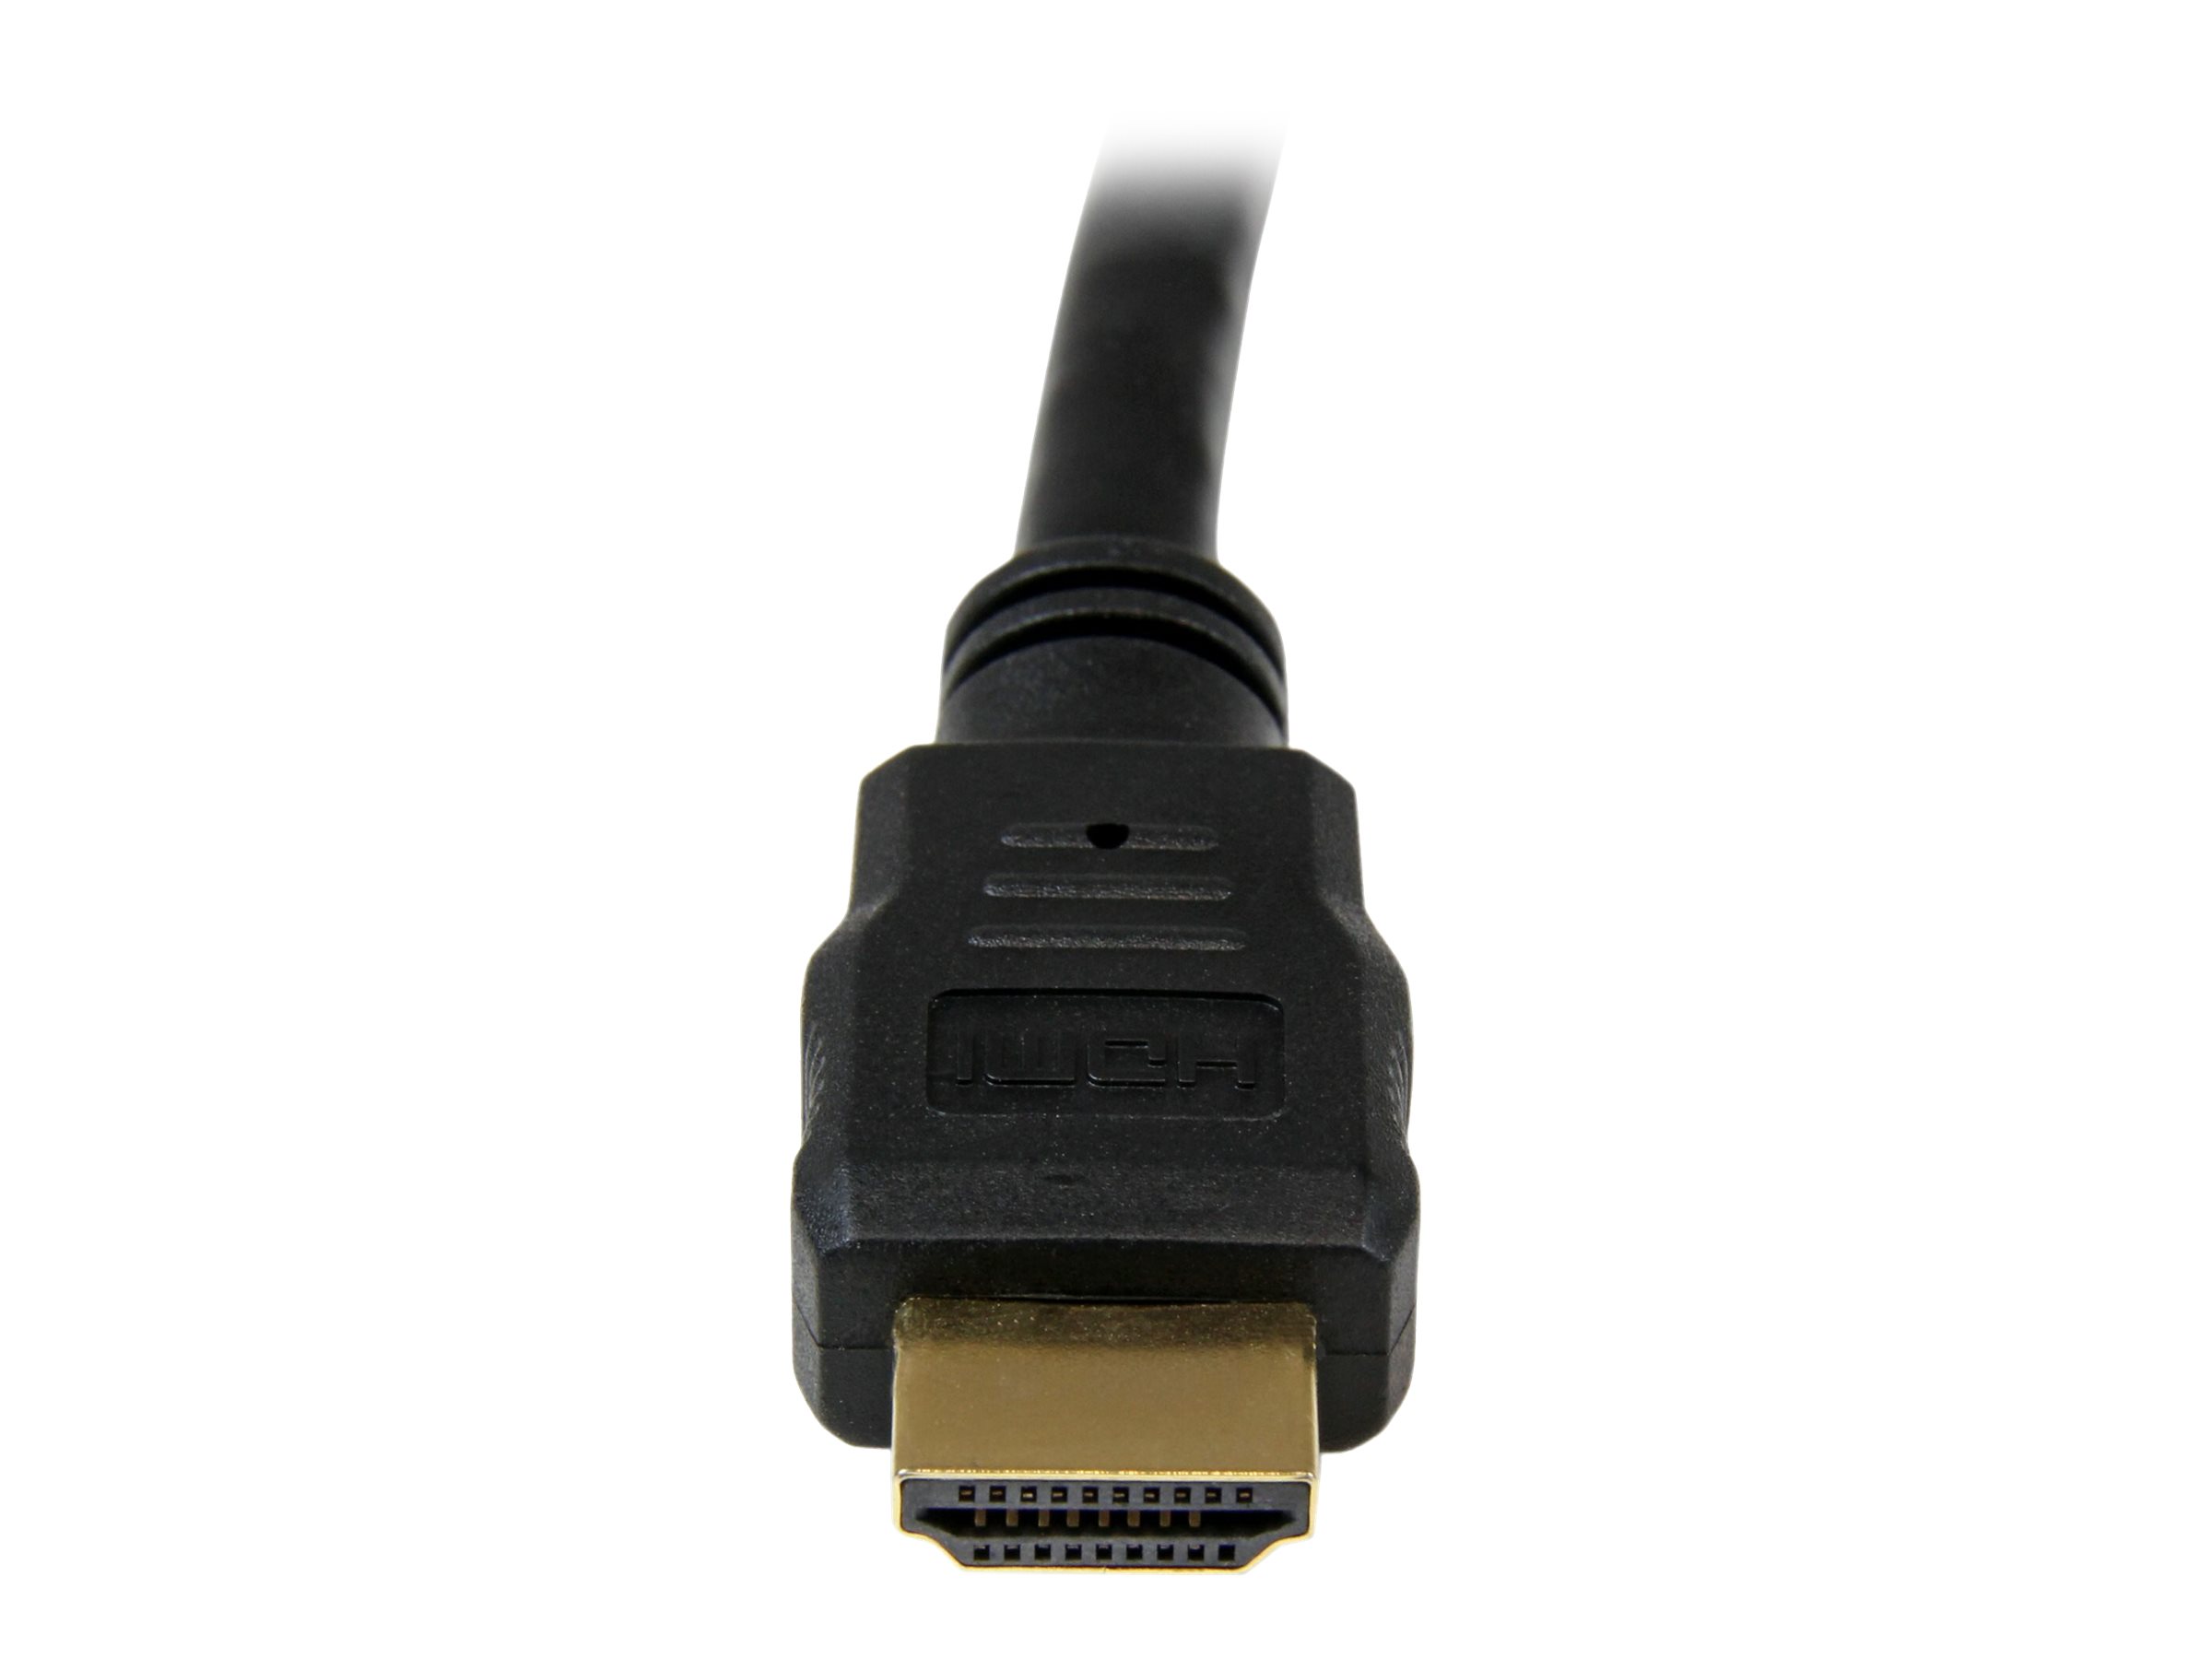 StarTech.com High-Speed-HDMI-Kabel 2m - HDMI Verbindungskabel Ultra HD 4k x 2k mit vergoldeten Kontakten - HDMI Anschlusskabel (St/St) - HDMI-Kabel - 2 m